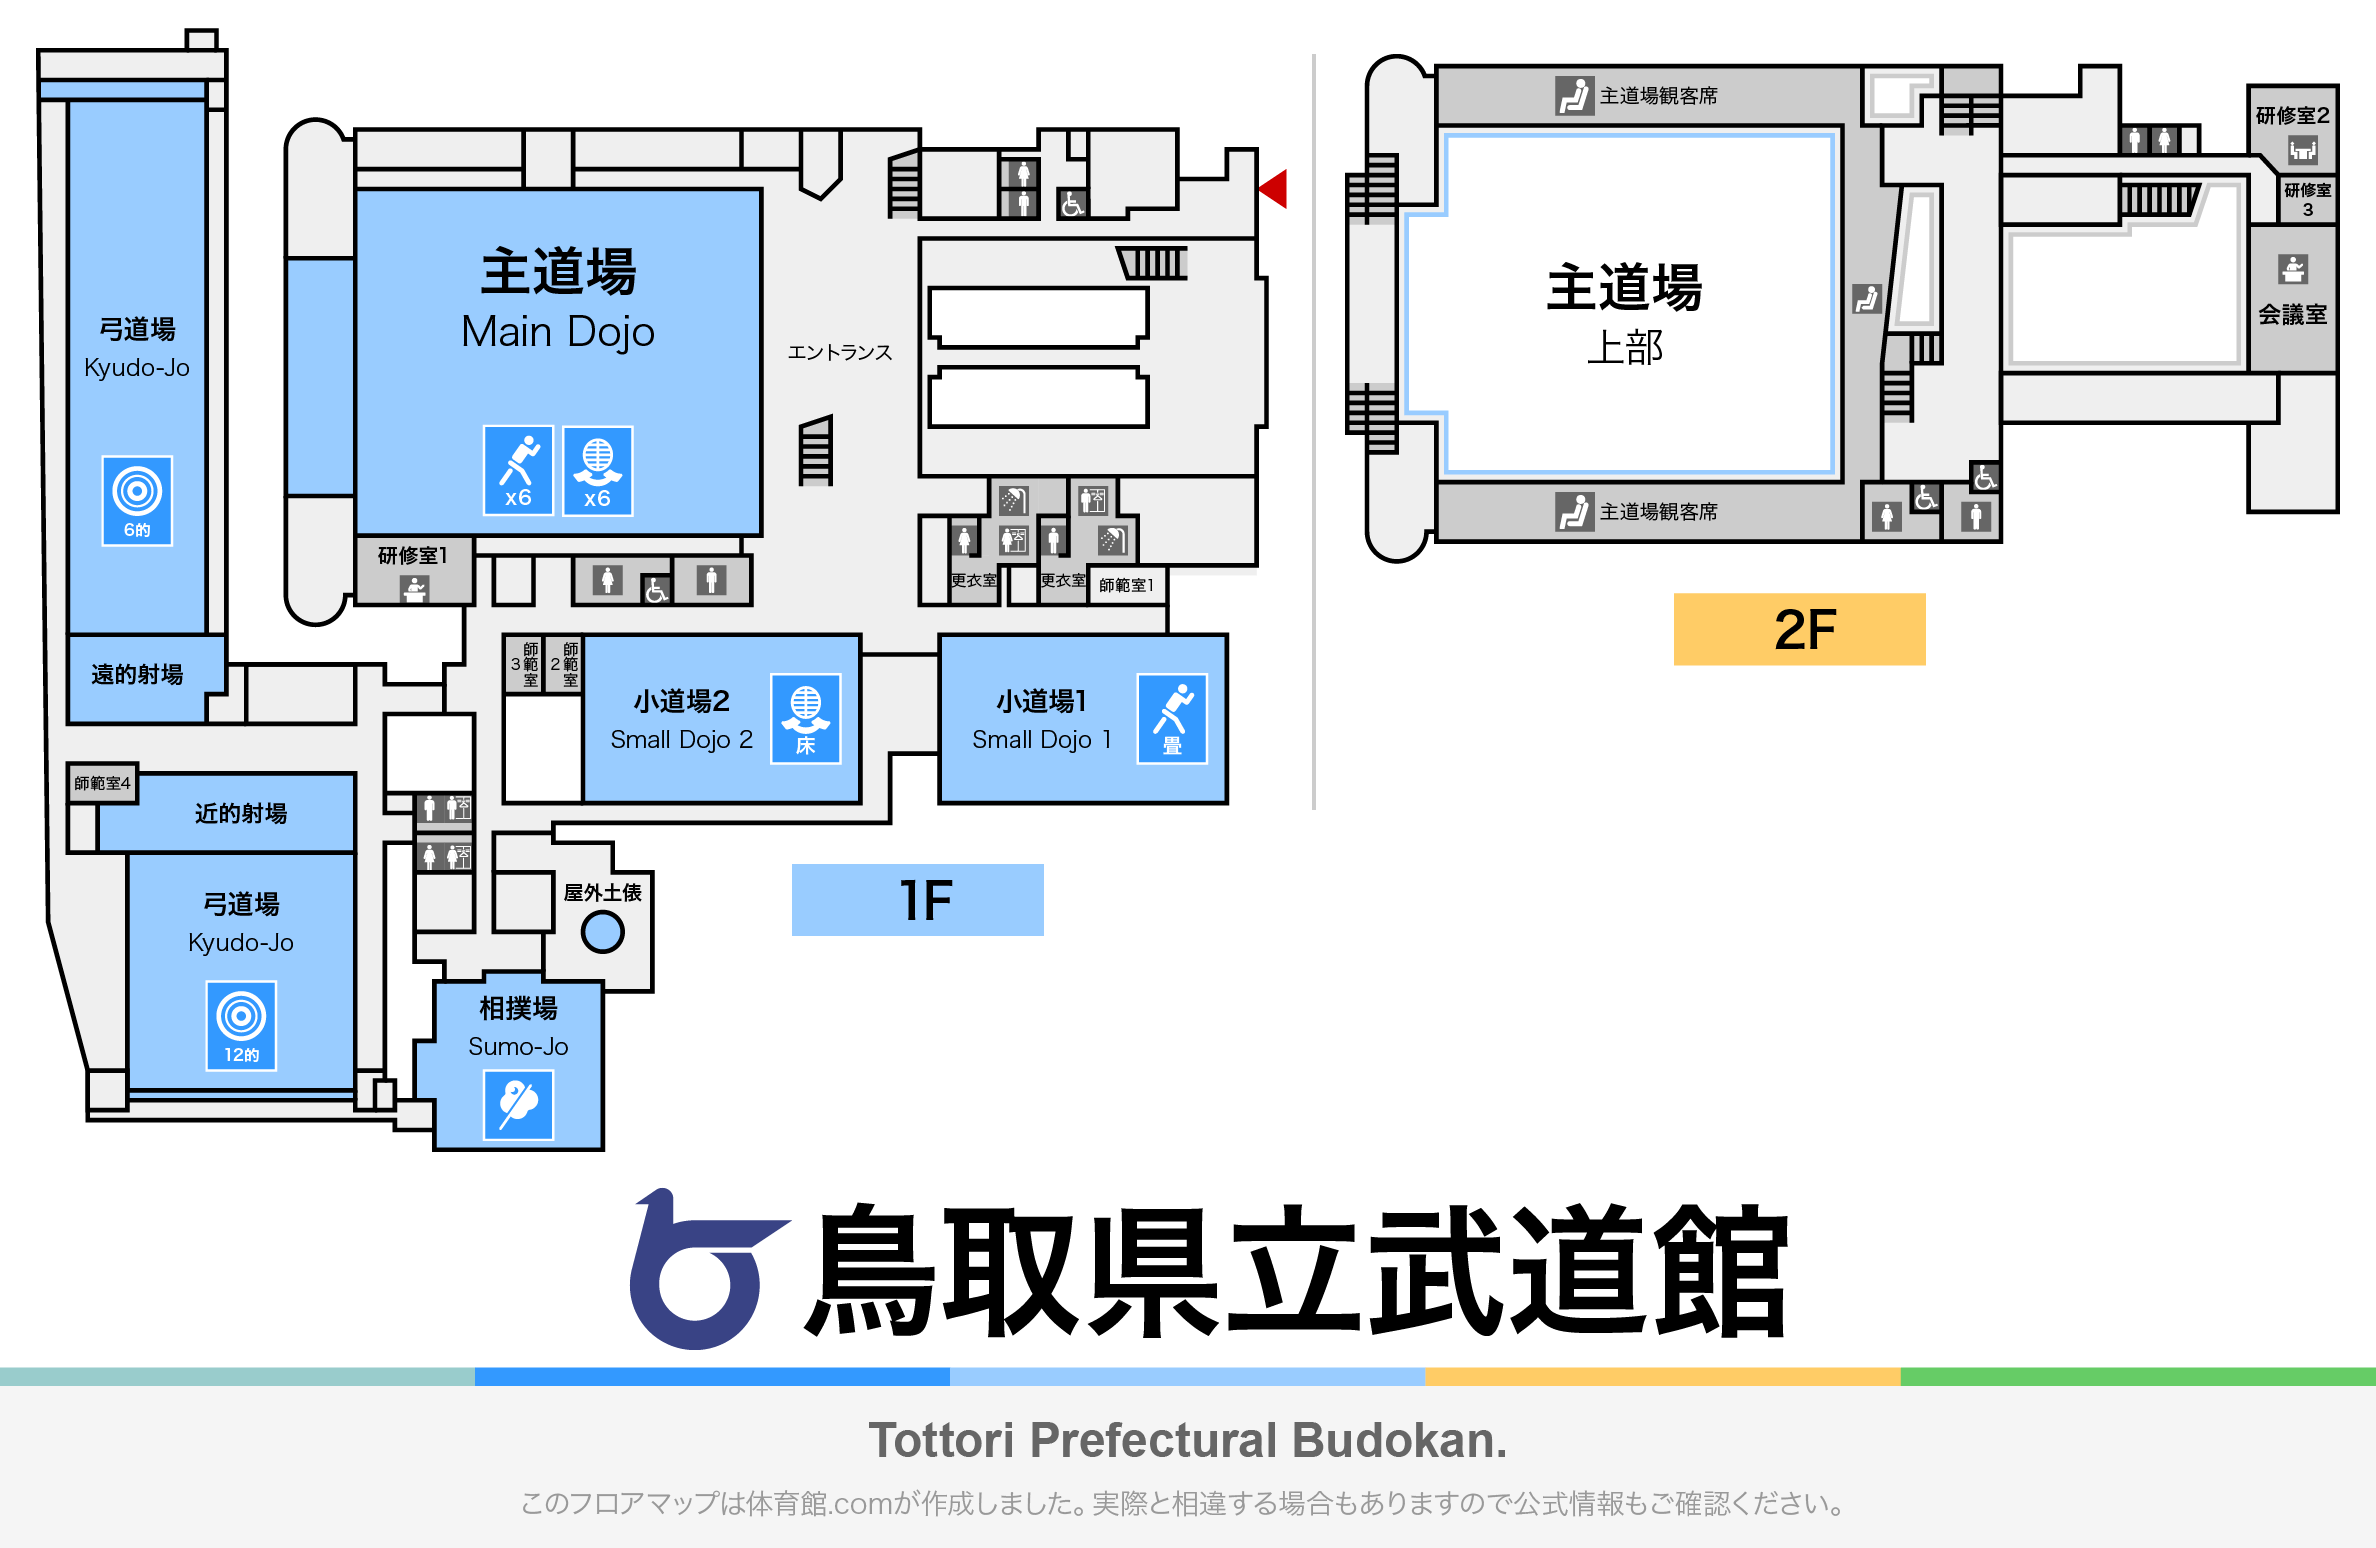 鳥取県立武道館のフロアマップ